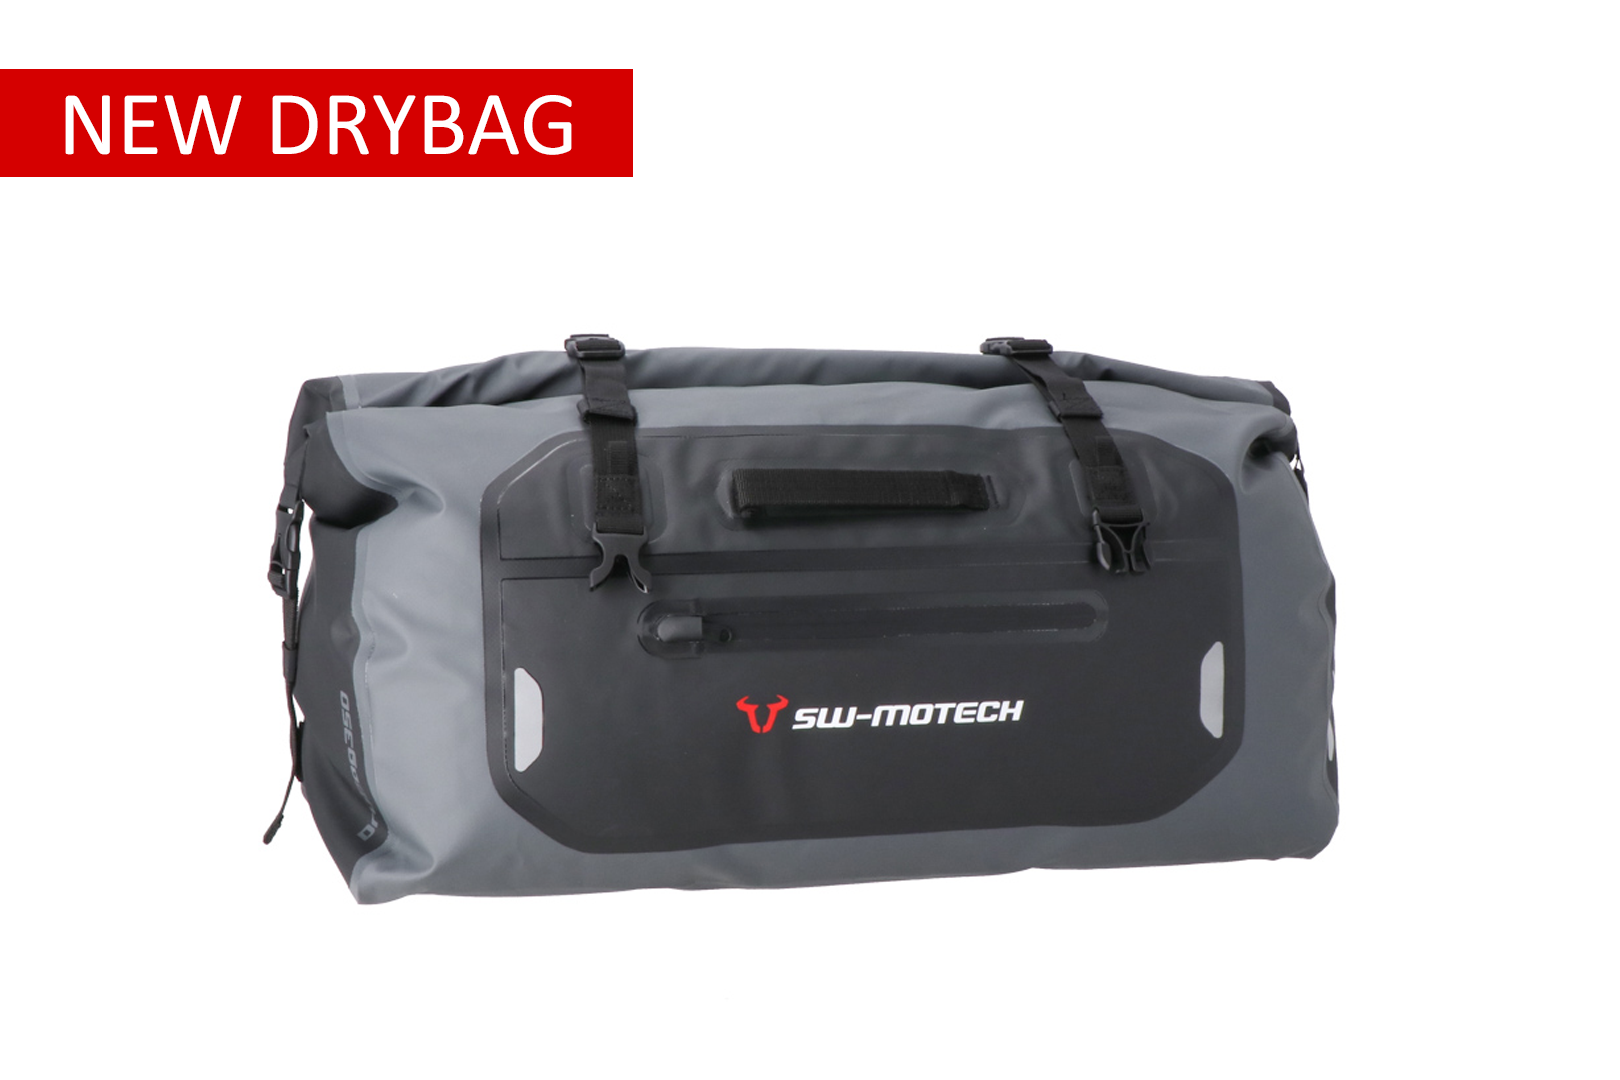 Drybag 350 tail bag Waterproof Grey/black 35 litre